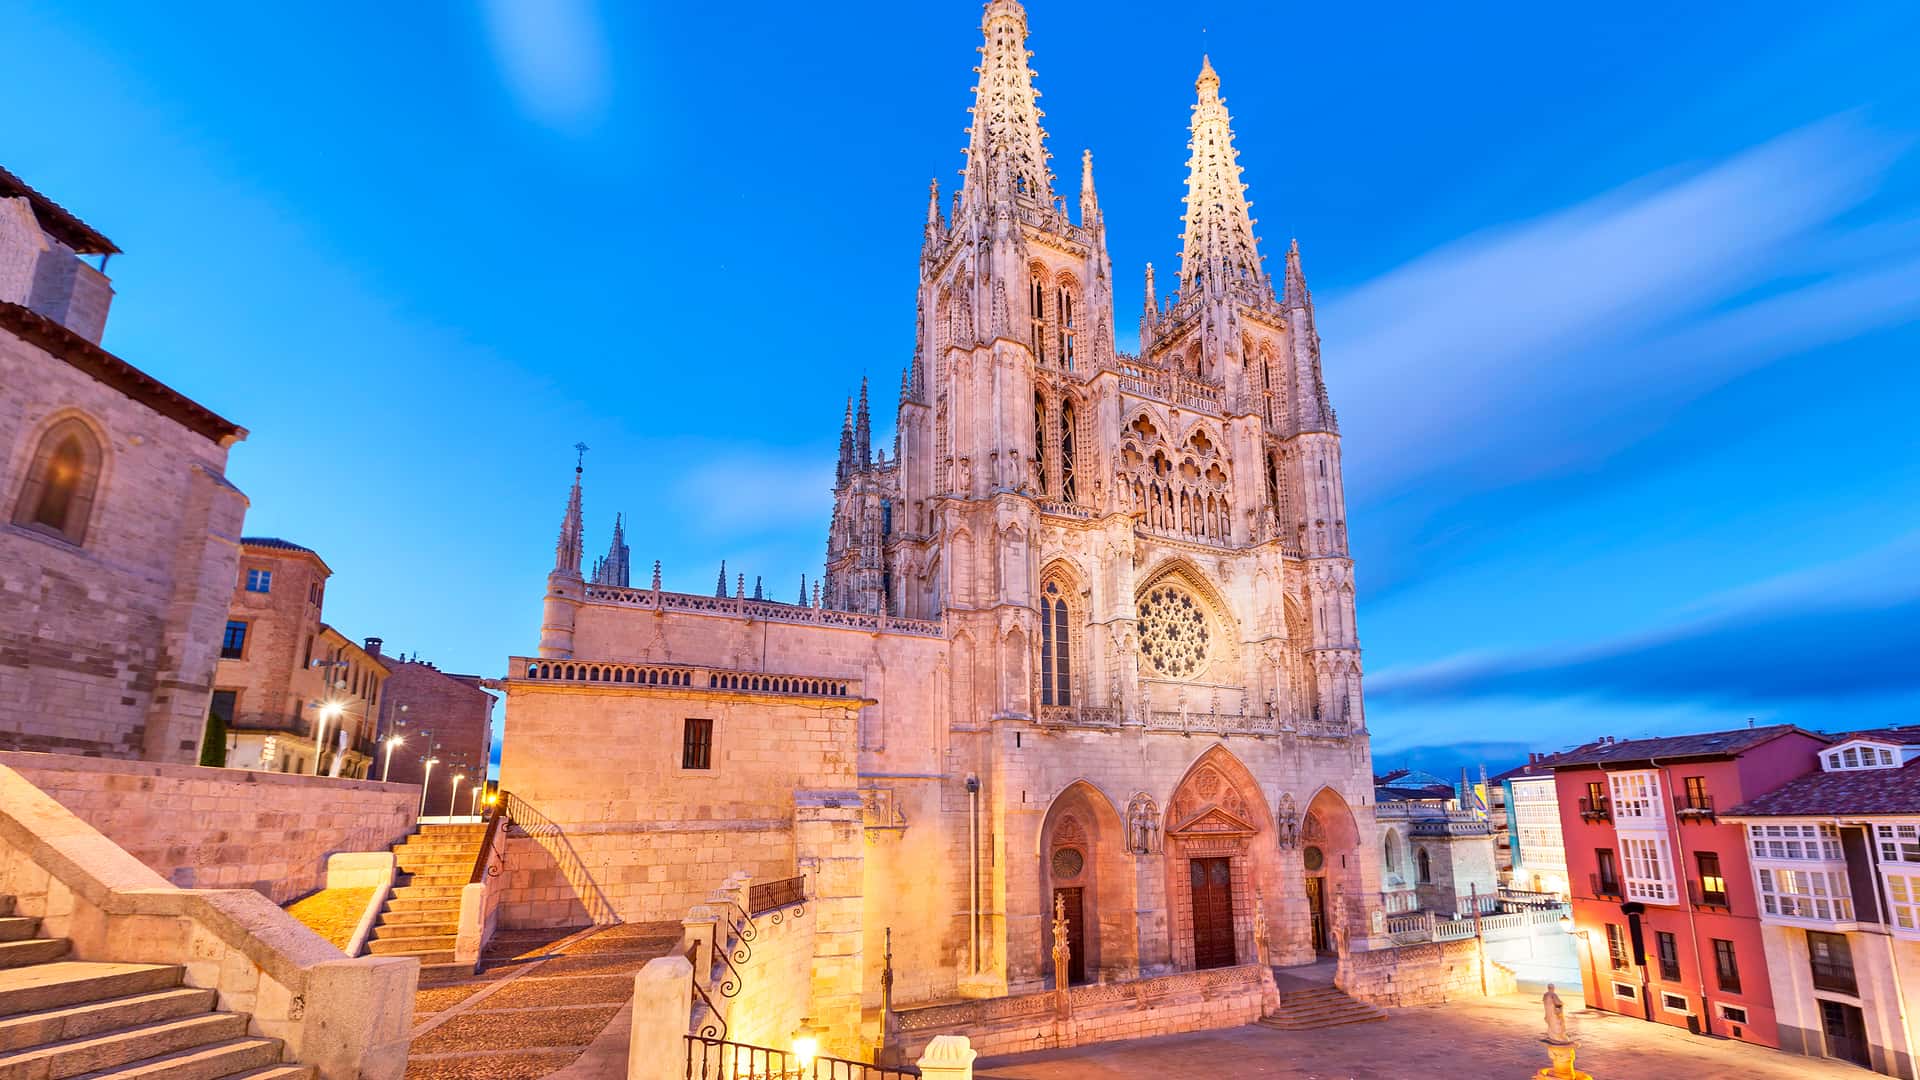 Burgos catedral en la luz de noche donde esta disponible el operador telefónico finetwork